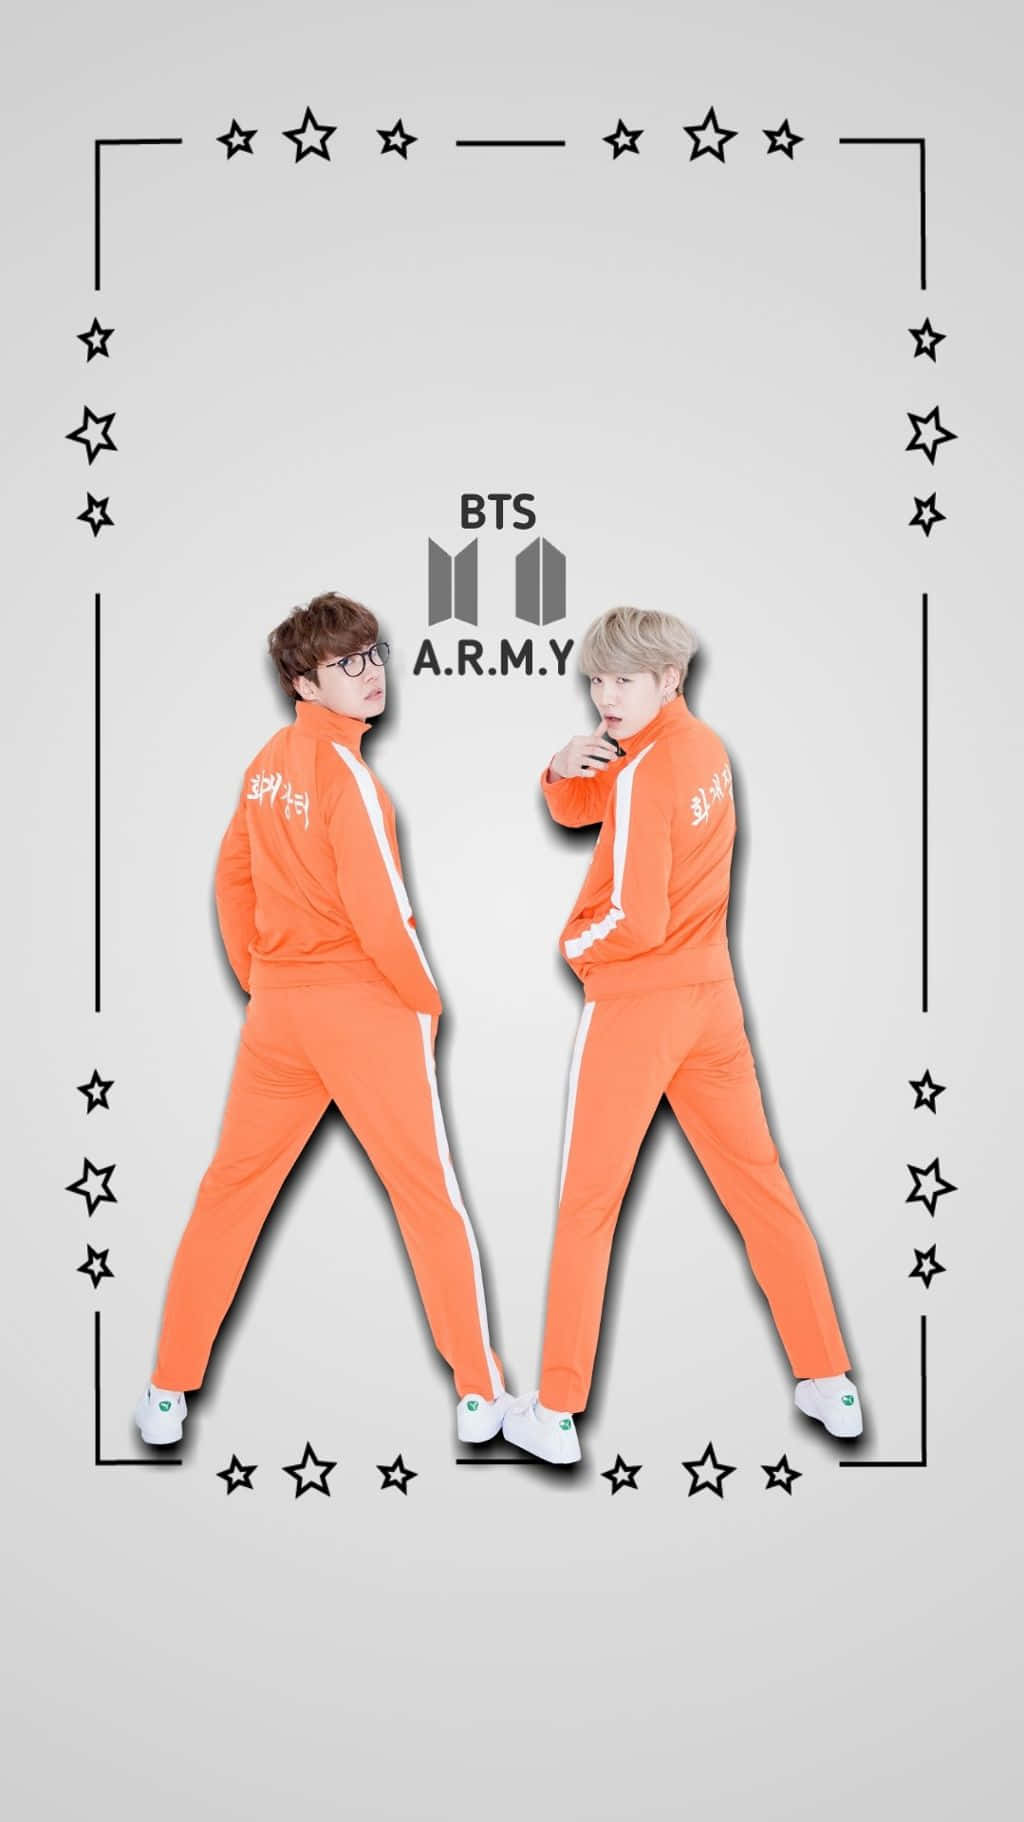 BTS Brings the Fun Wallpaper